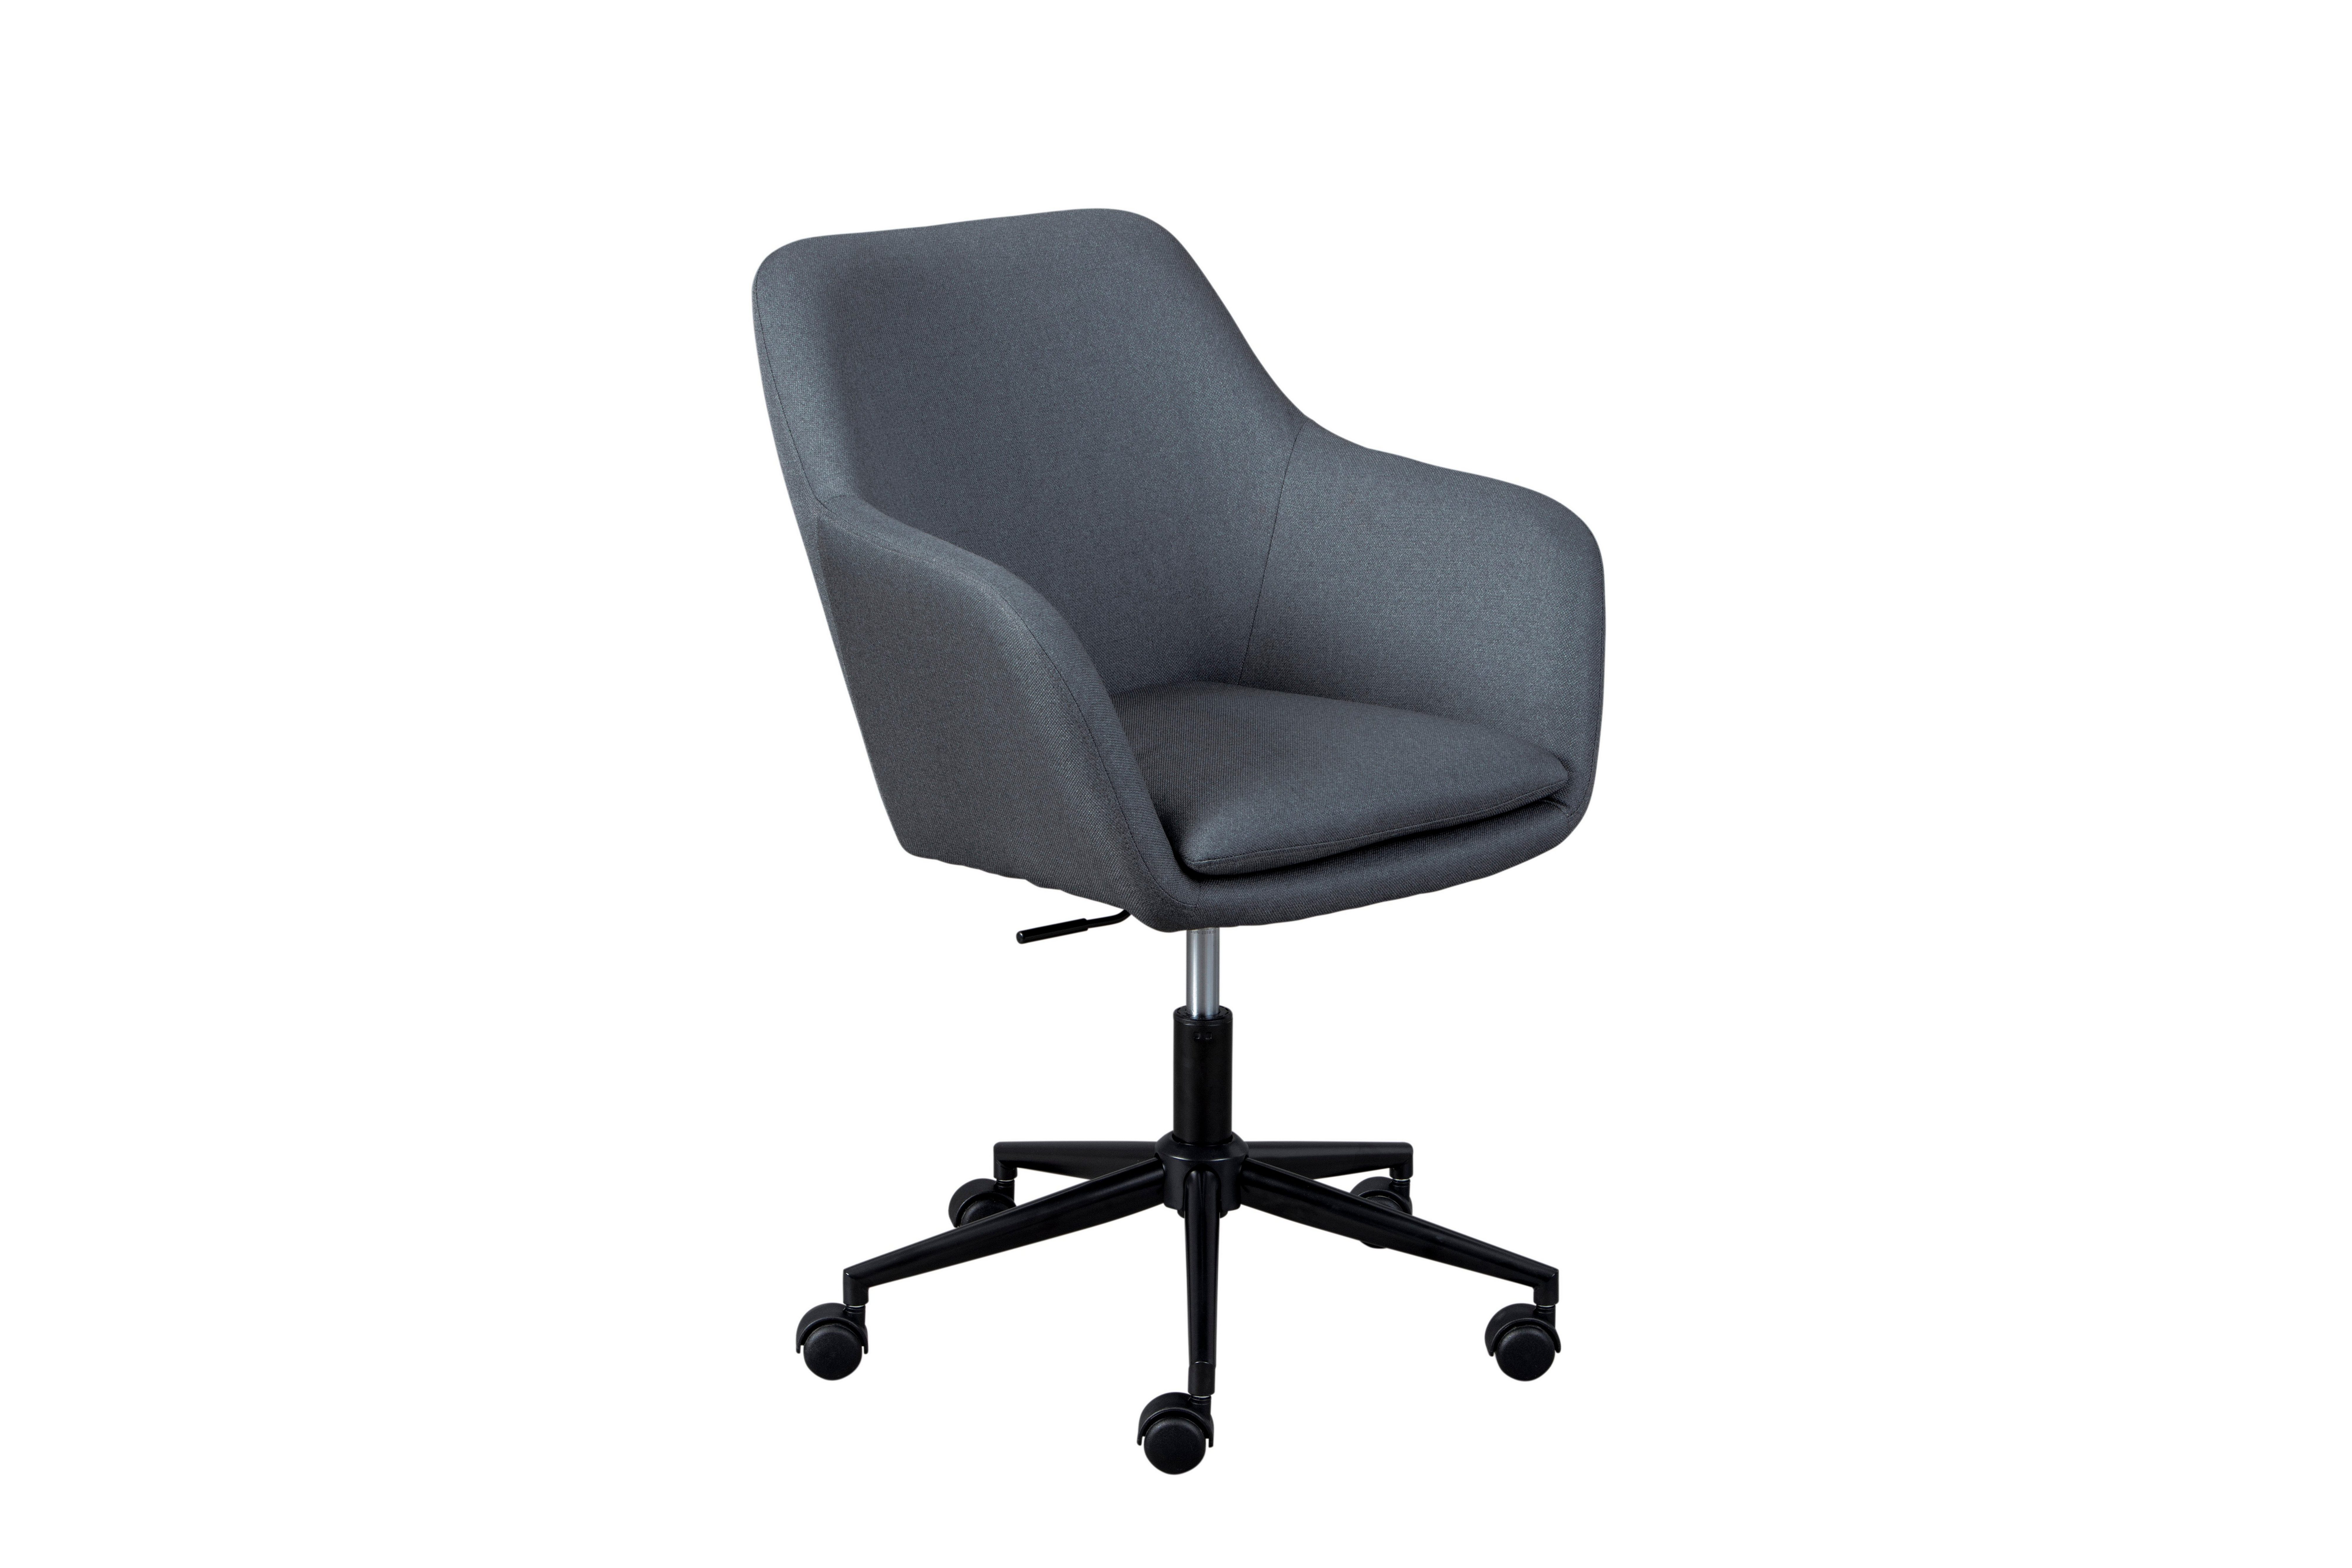 Inter Link Drehstuhl Workrelaxed, in 5 Trendfarben, abnehmbares Sitzkissen zur leichen Reinigung, Sicherheitsrollen, höhenverstellbar, Zeitloses Design Grau | Grau